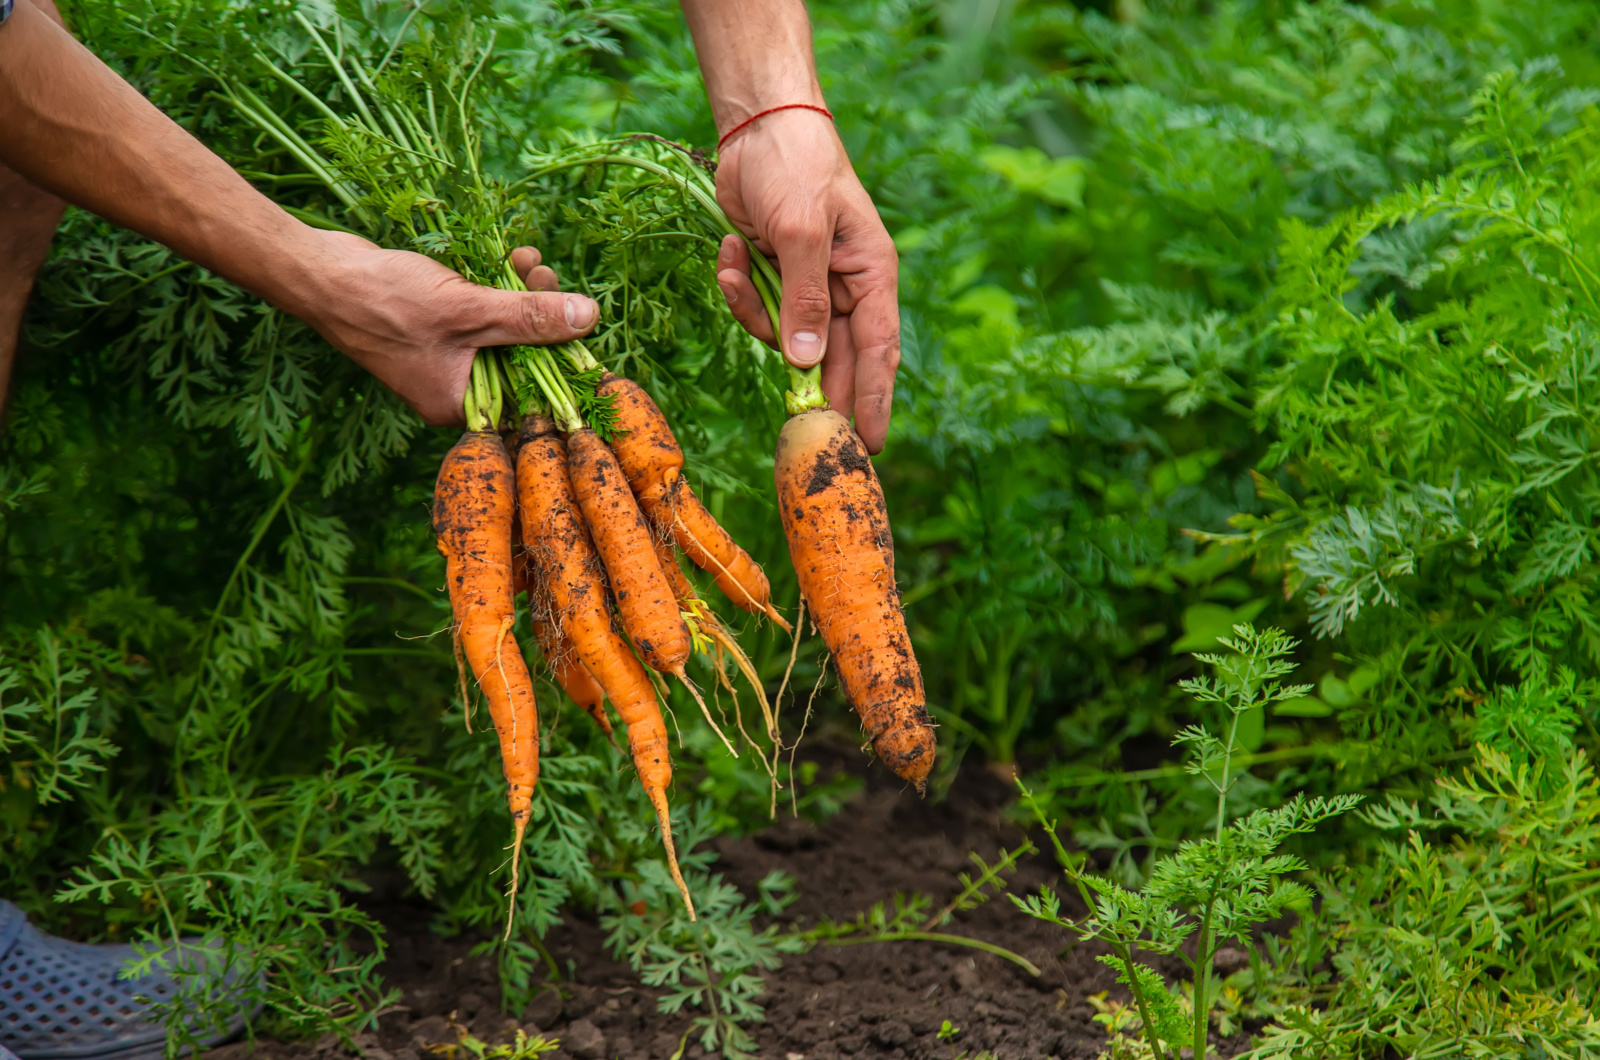 Male farmer harvesting carrots in the garden